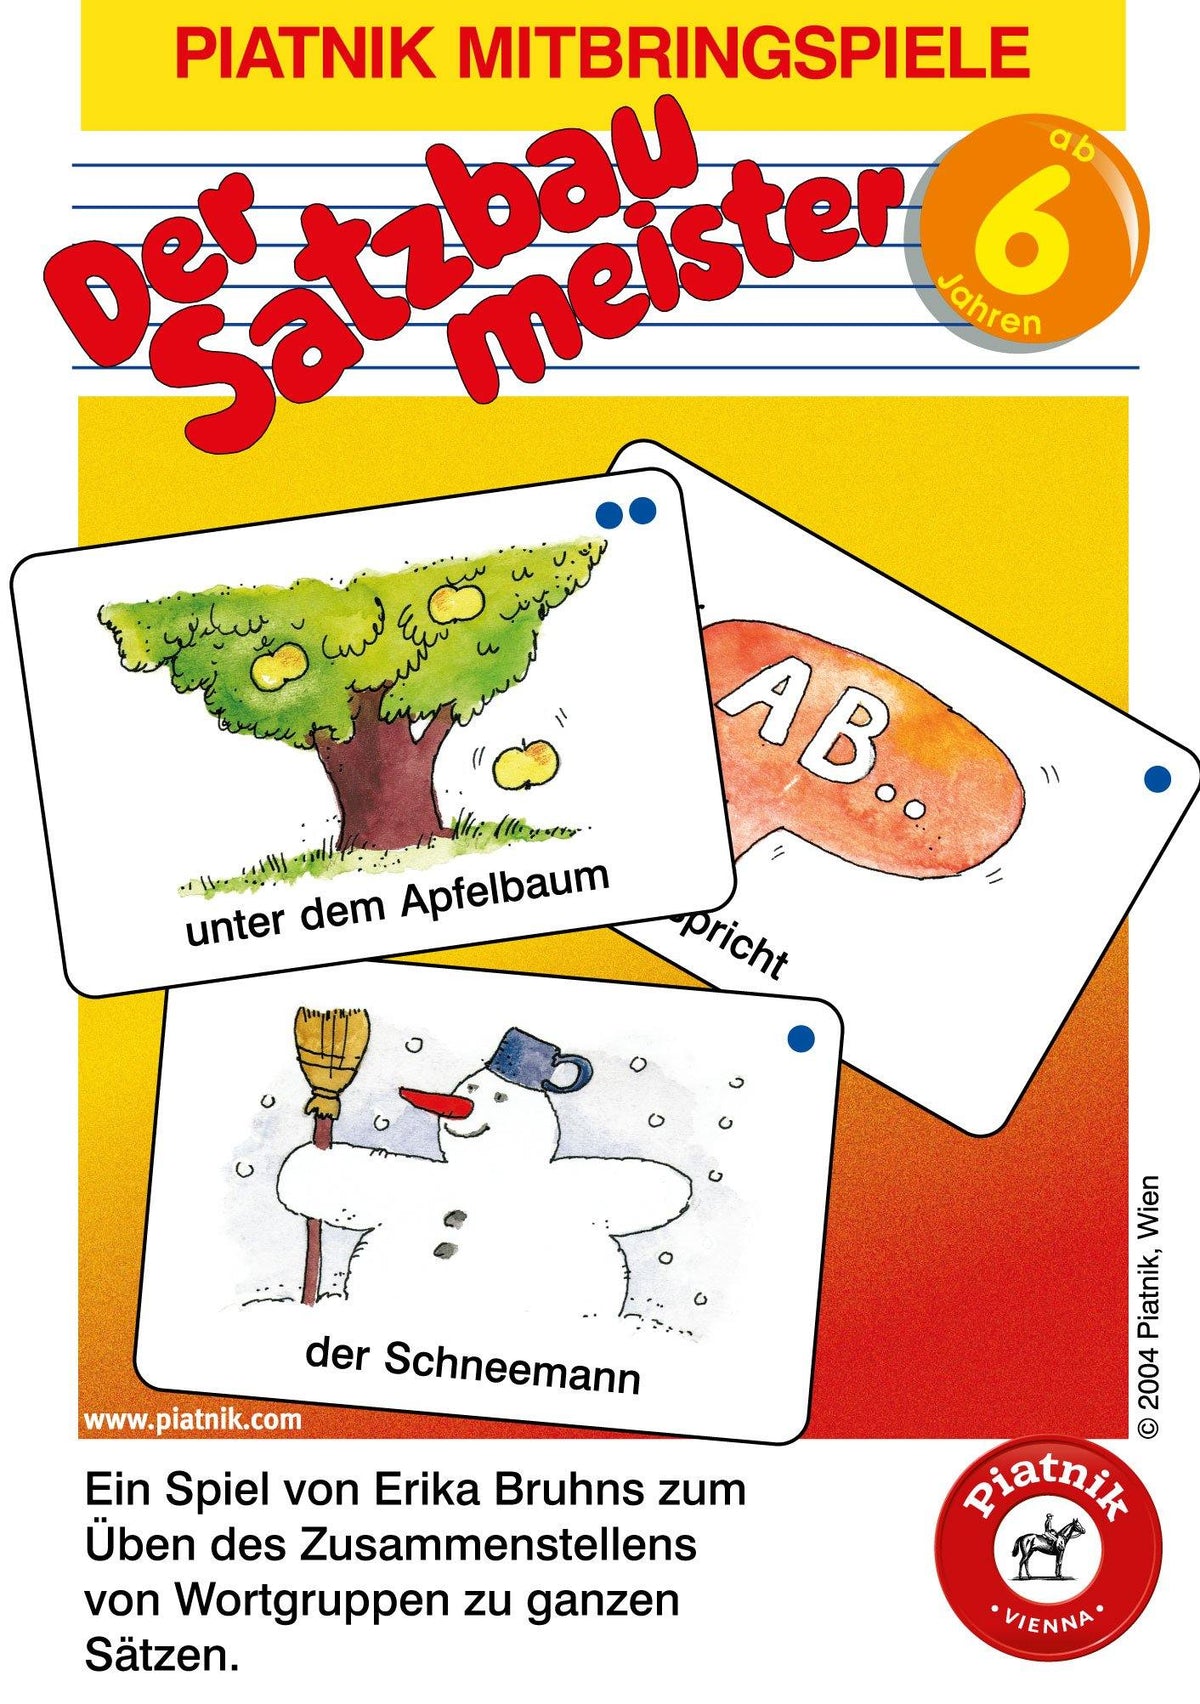 Der Satzbaumeister - Lernspiel - www. kunstundspiel .de 7035